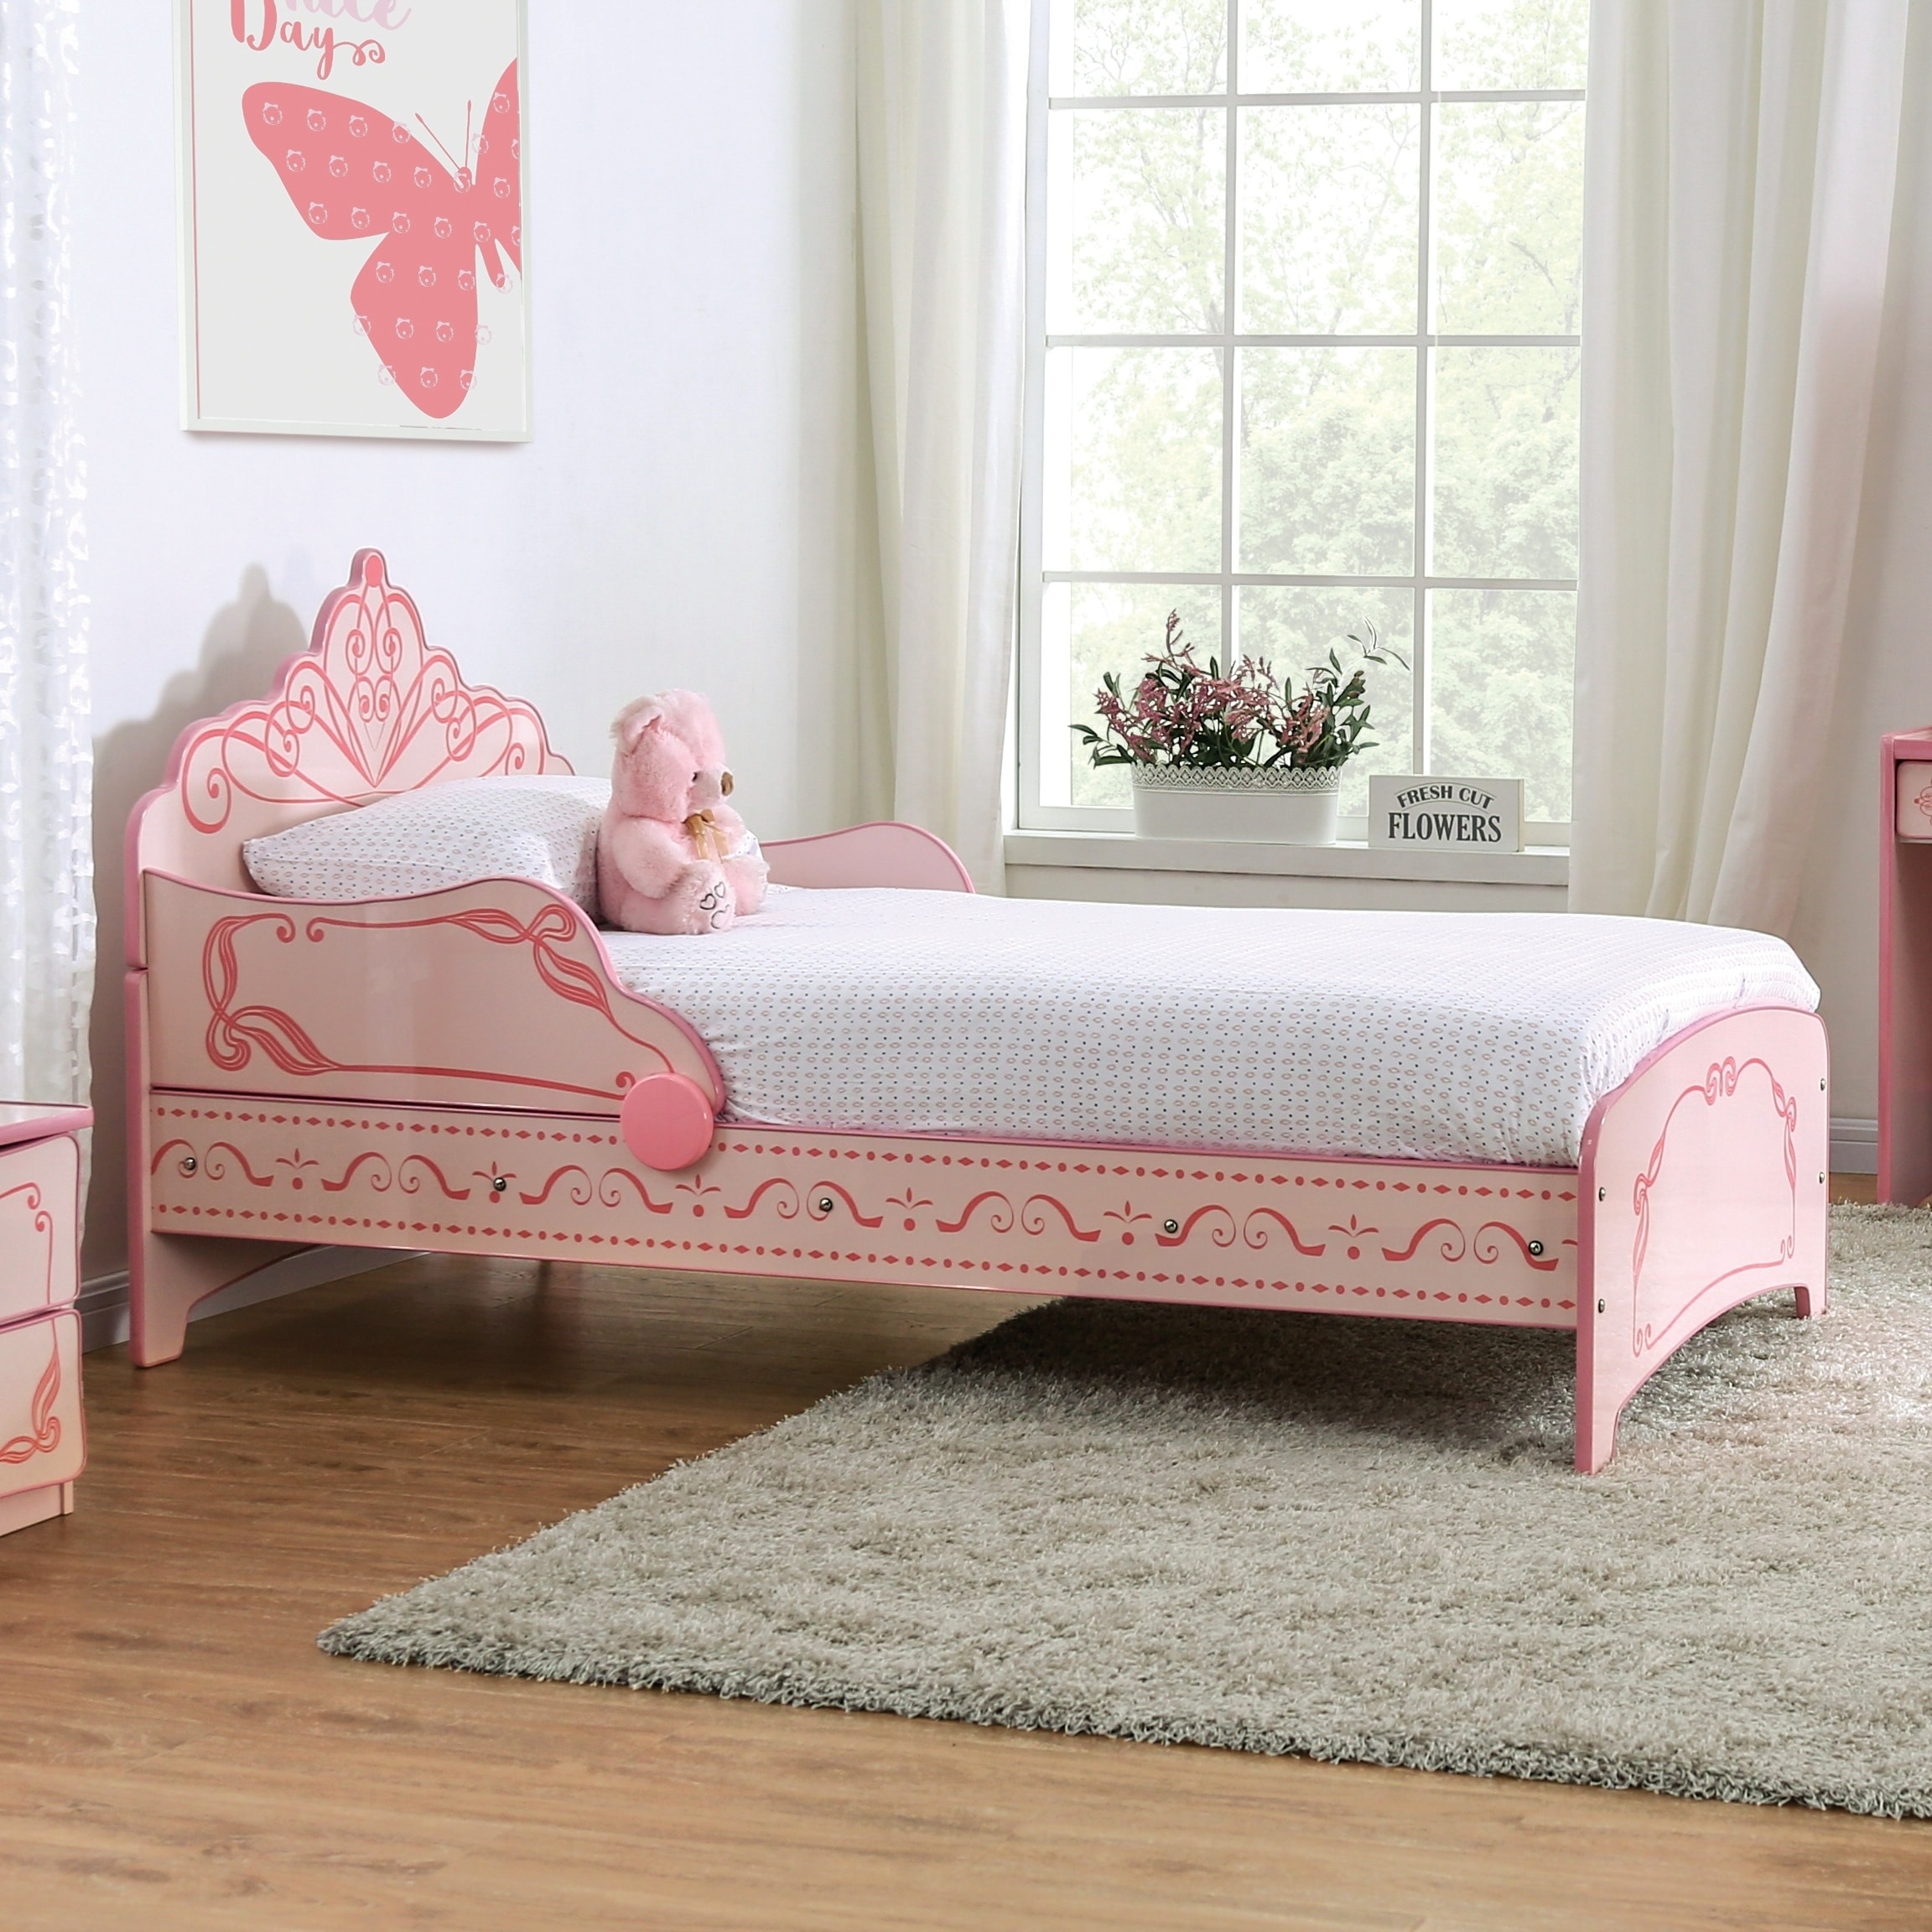 princess bed furniture